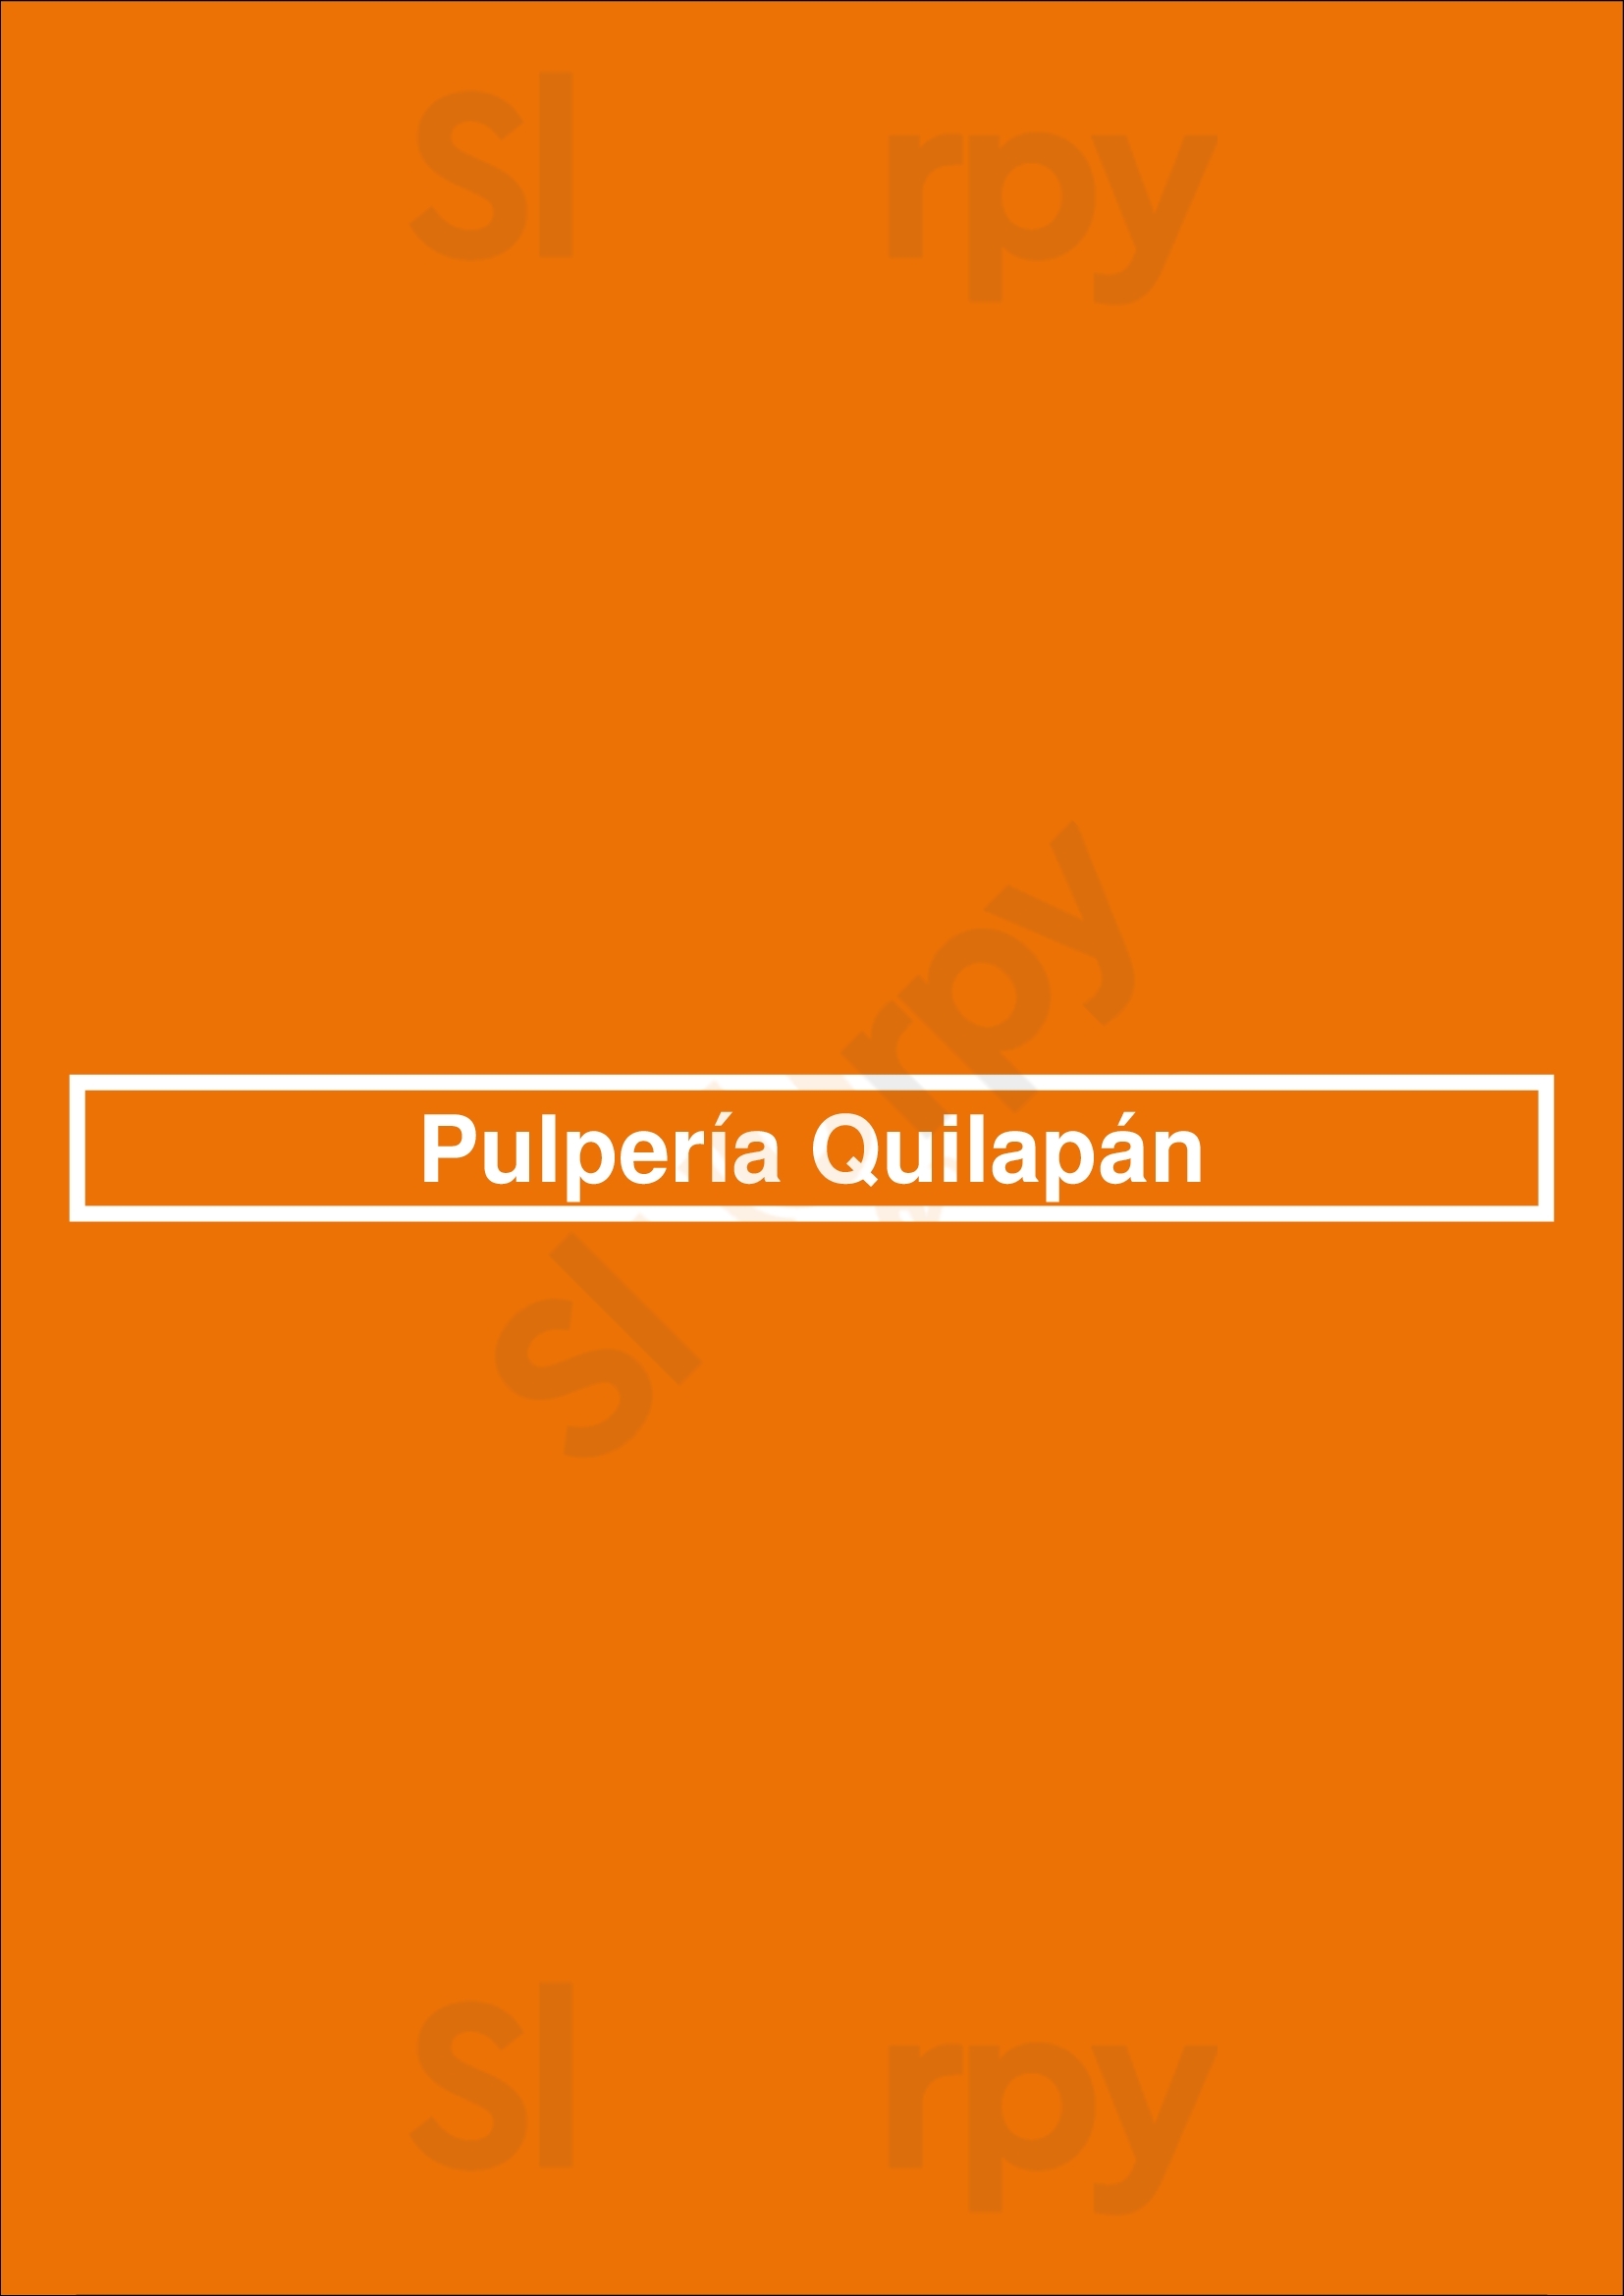 Pulpería Quilapán Buenos Aires Menu - 1